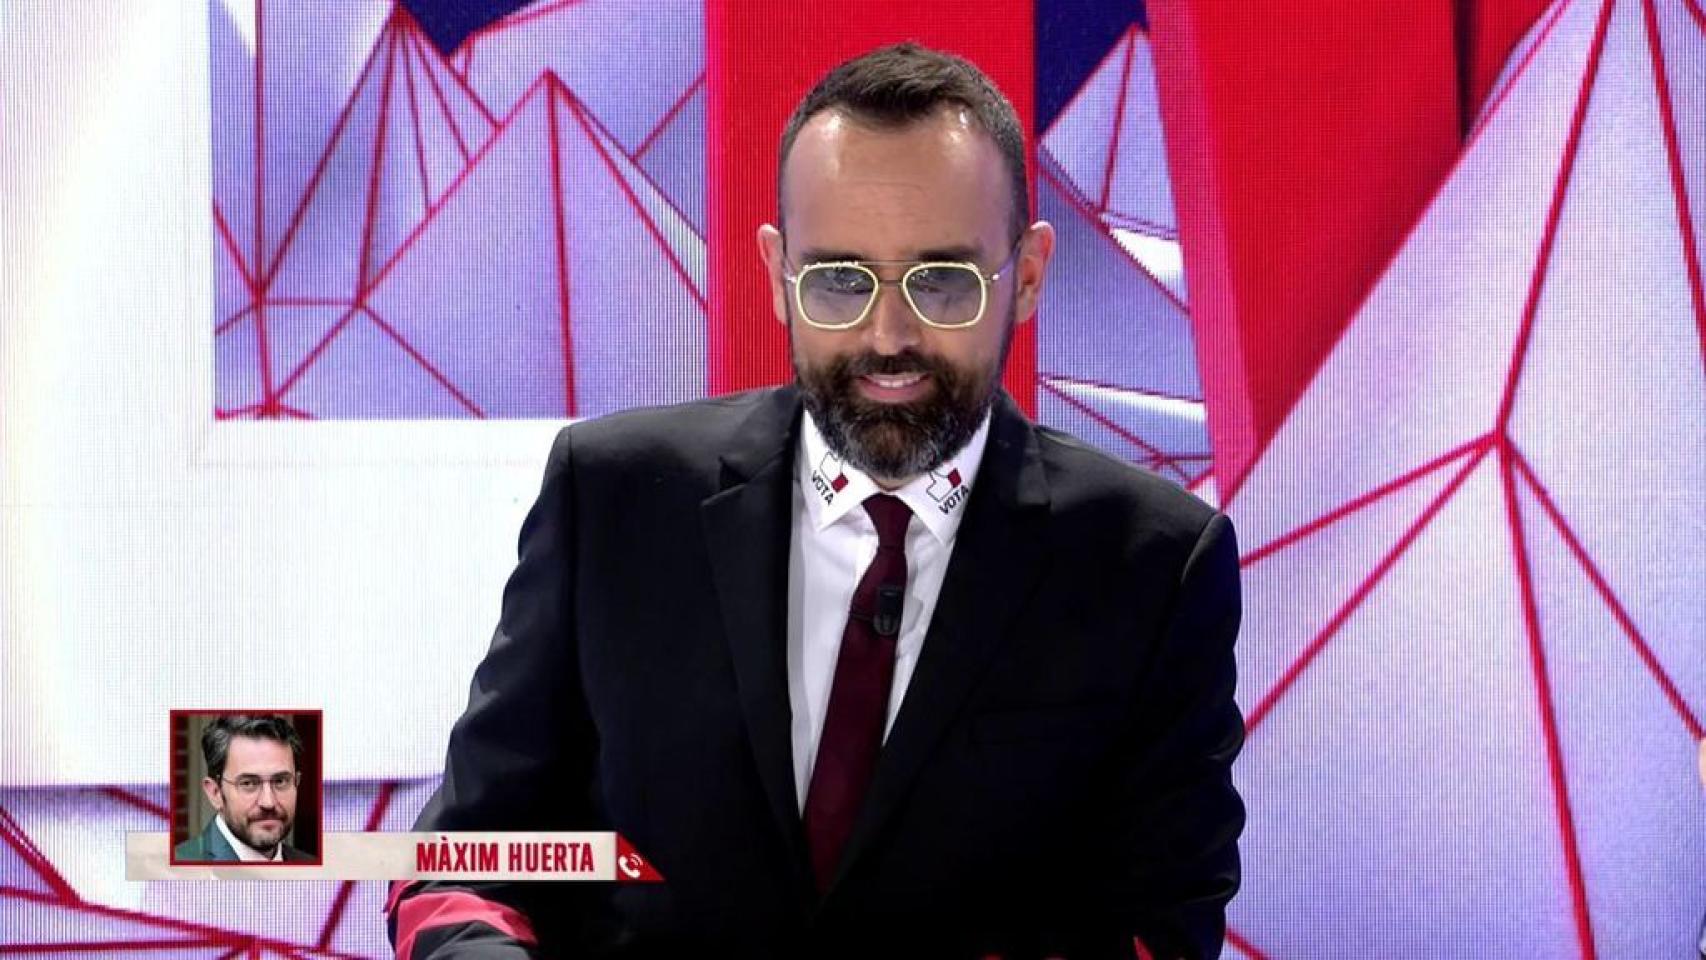 Màxim Huerta fue casero de un conocido presentador